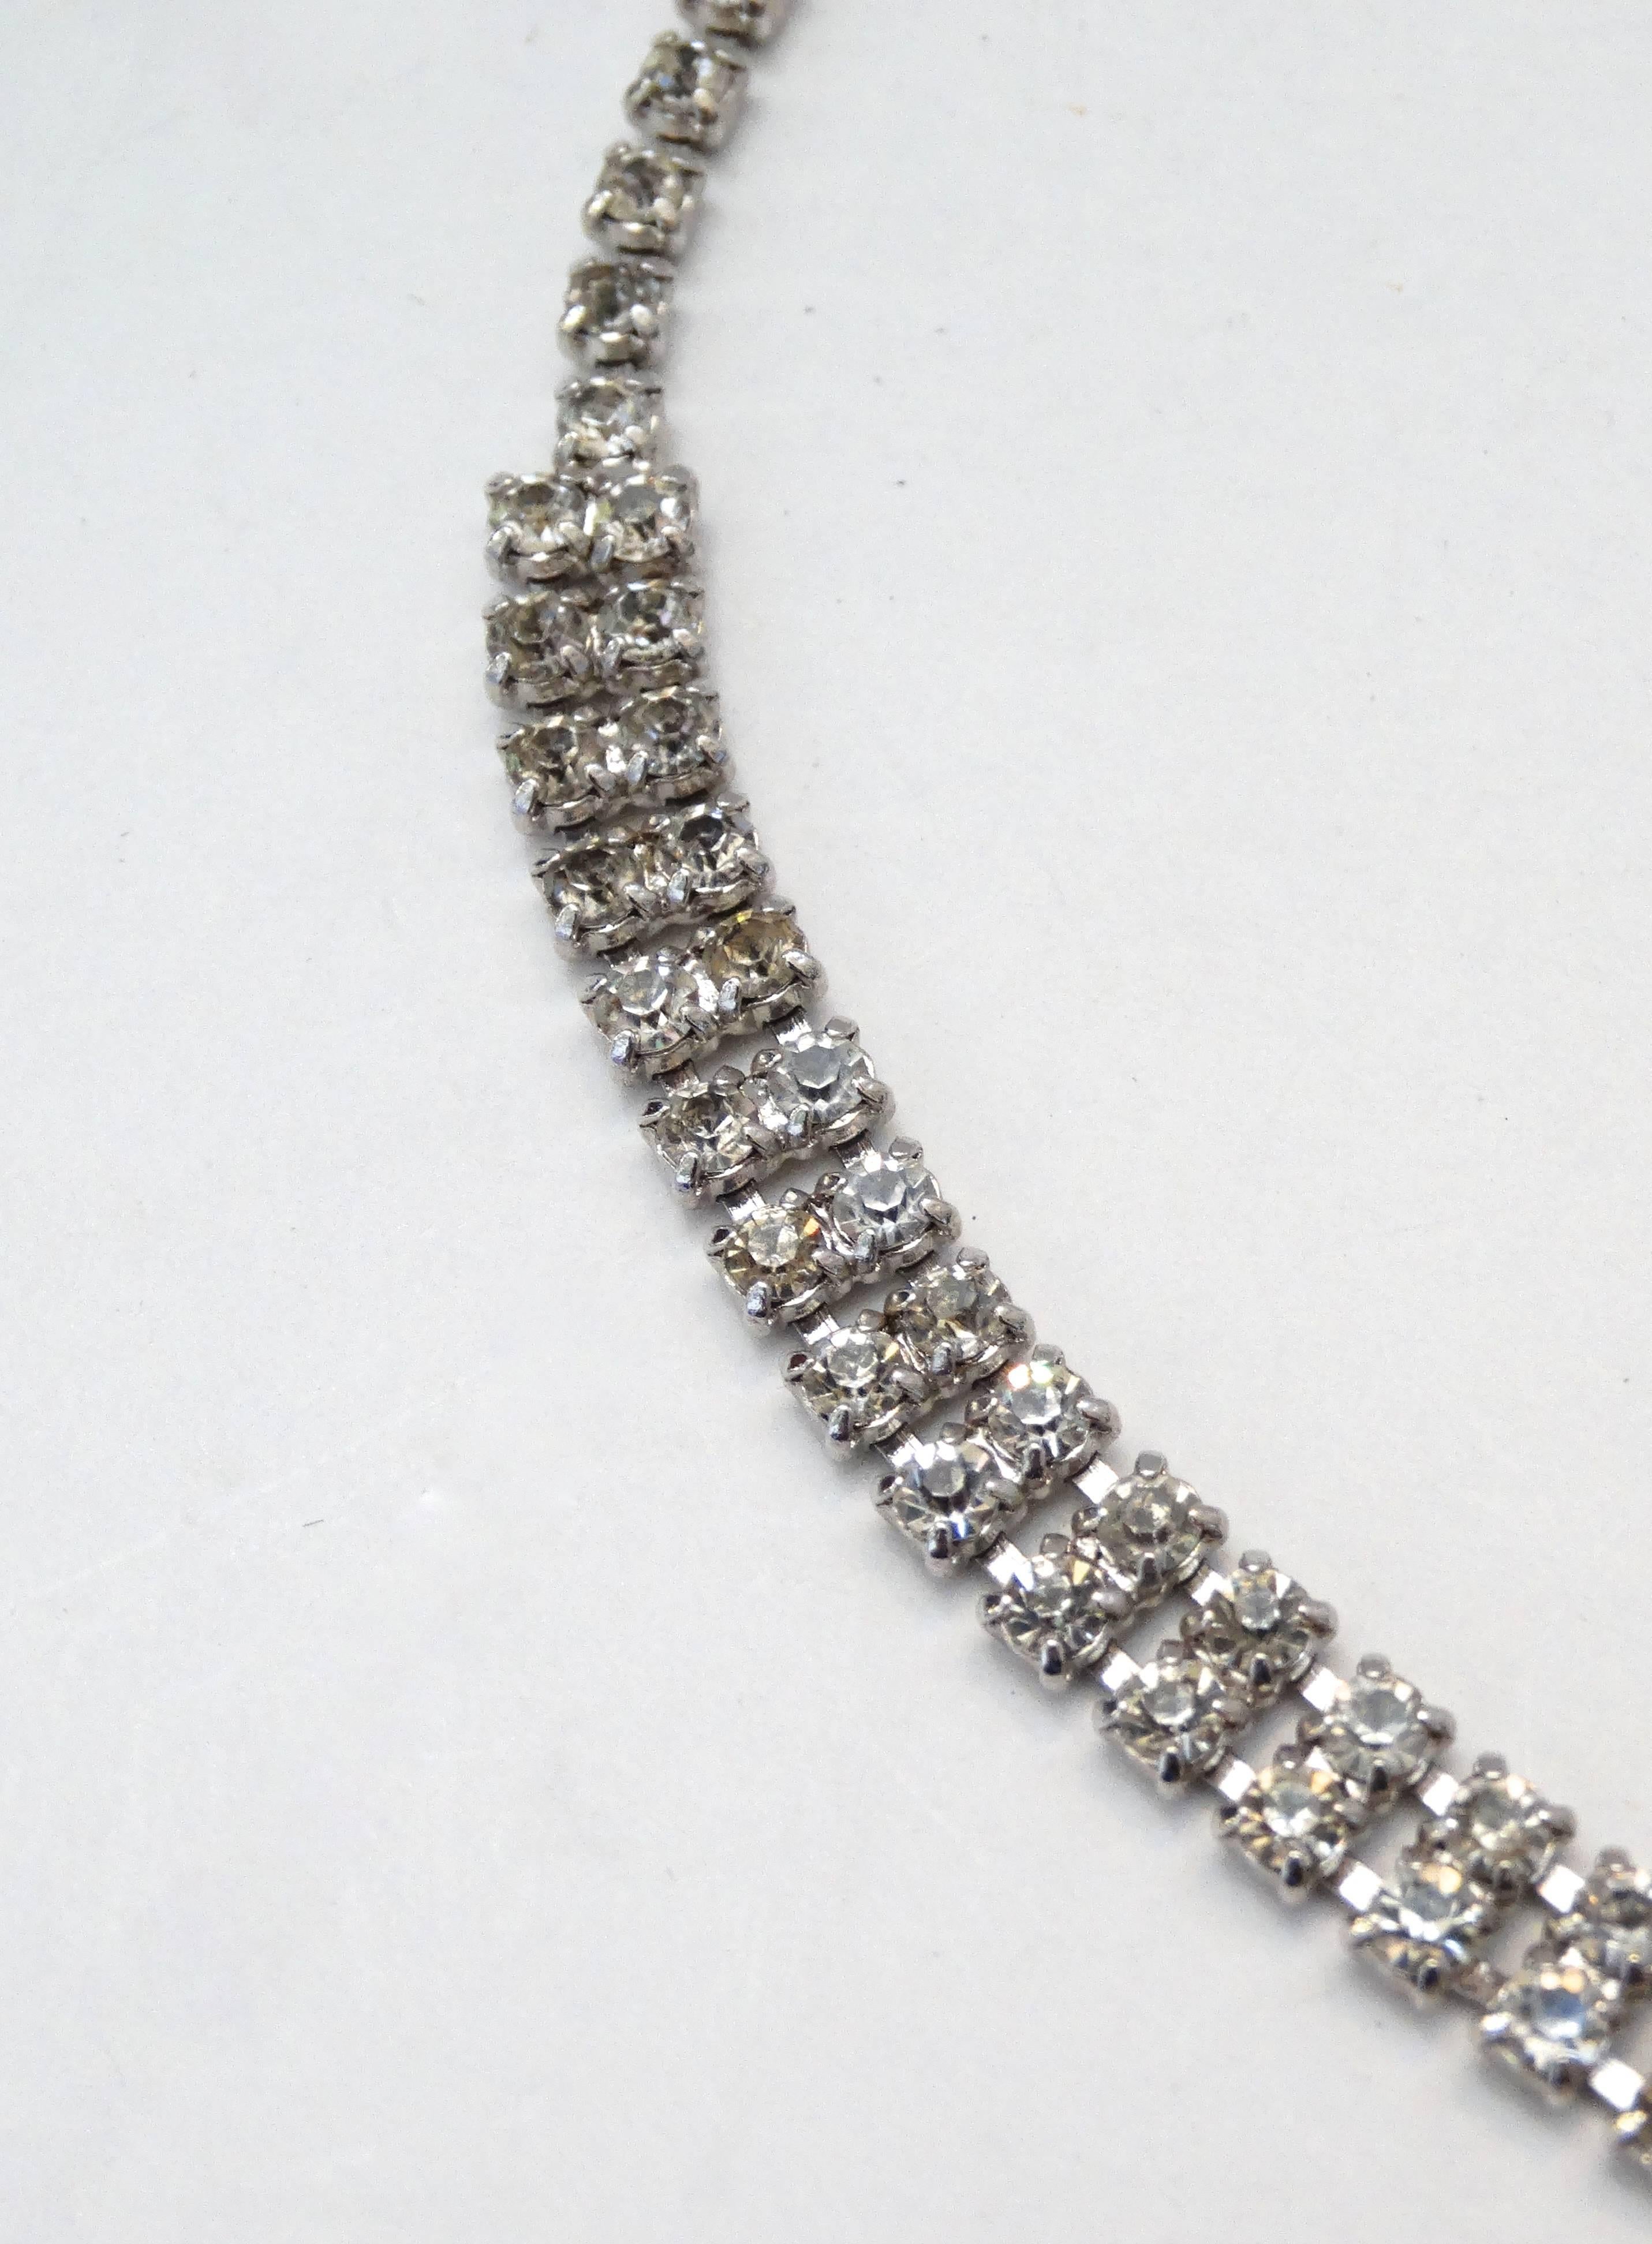 Retrouvez le glamour des années 1960 avec cet adorable collier à pendentifs en strass ! Composé de pierres précieuses en strass magnifiquement taillées, de formes et de tailles variées, soutenu par un métal argenté de qualité. Un grand pendentif en